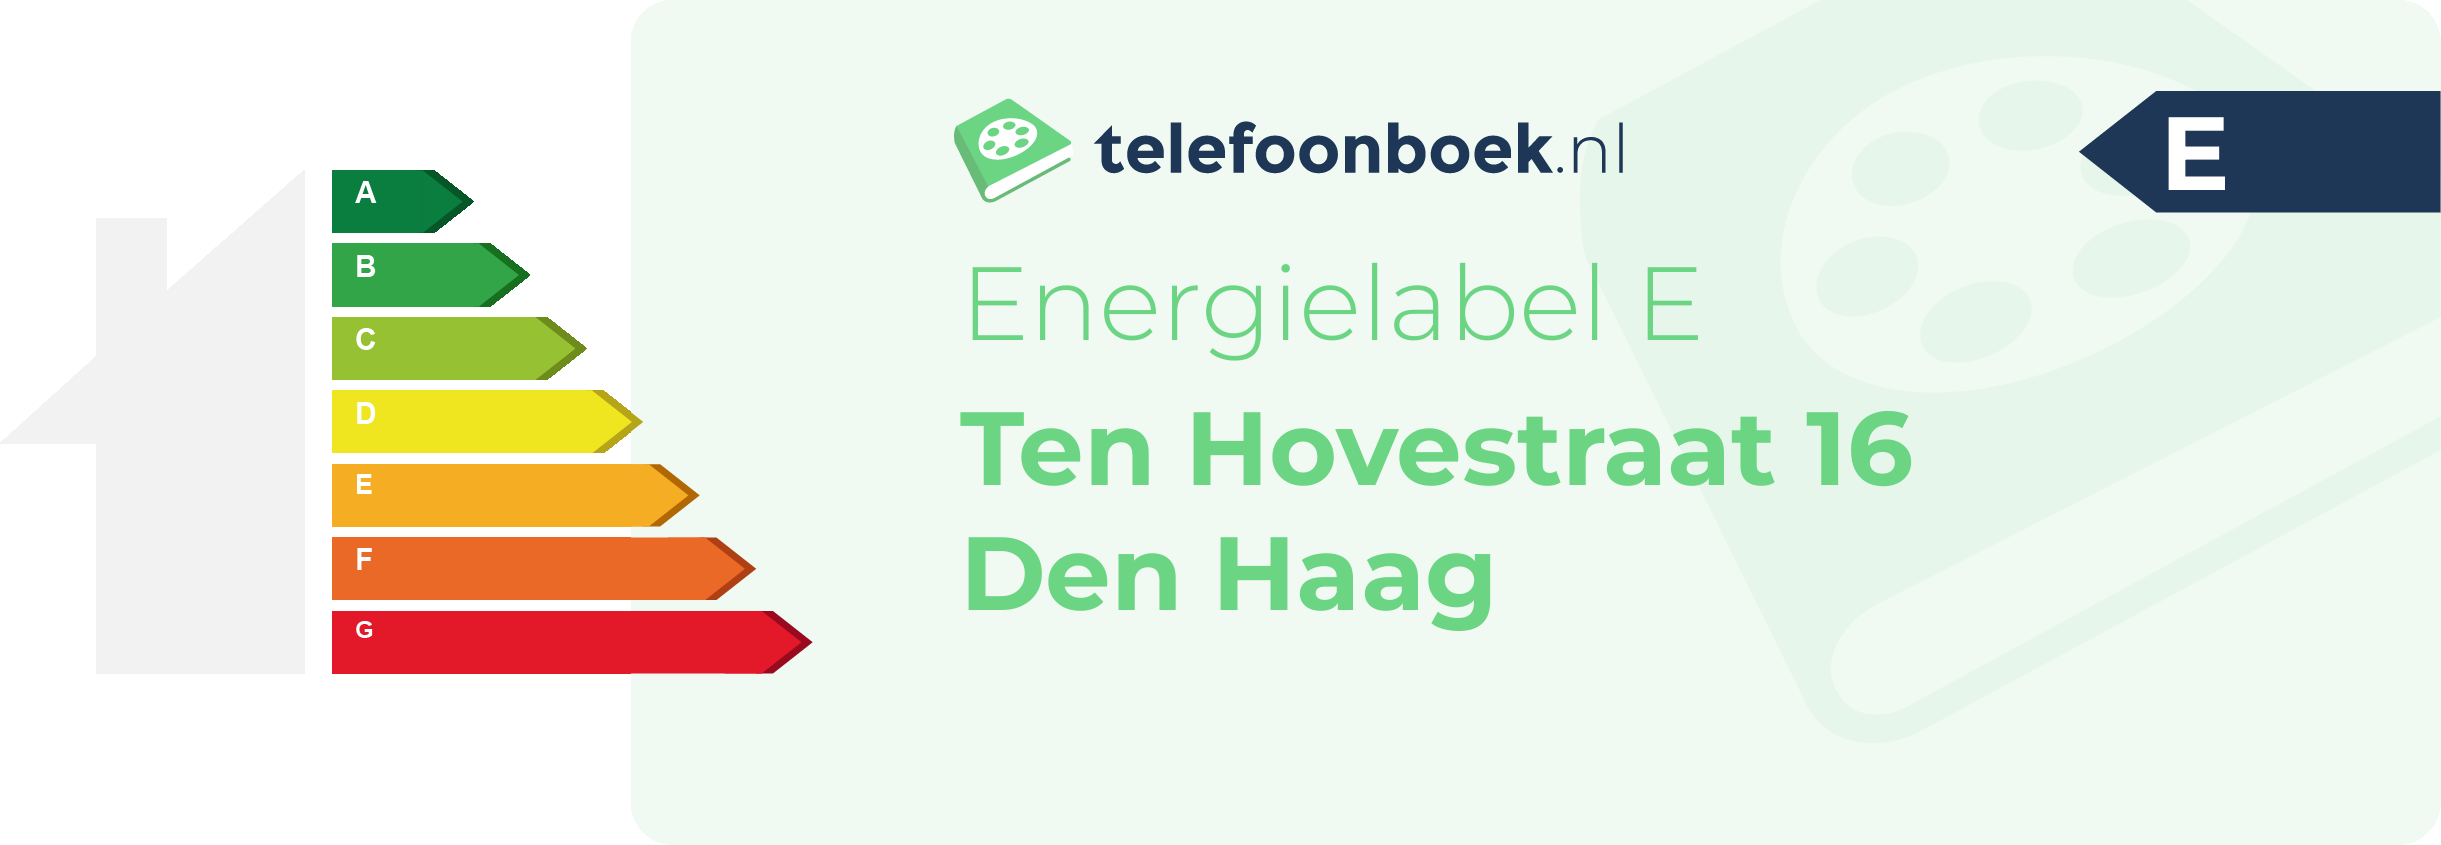 Energielabel Ten Hovestraat 16 Den Haag